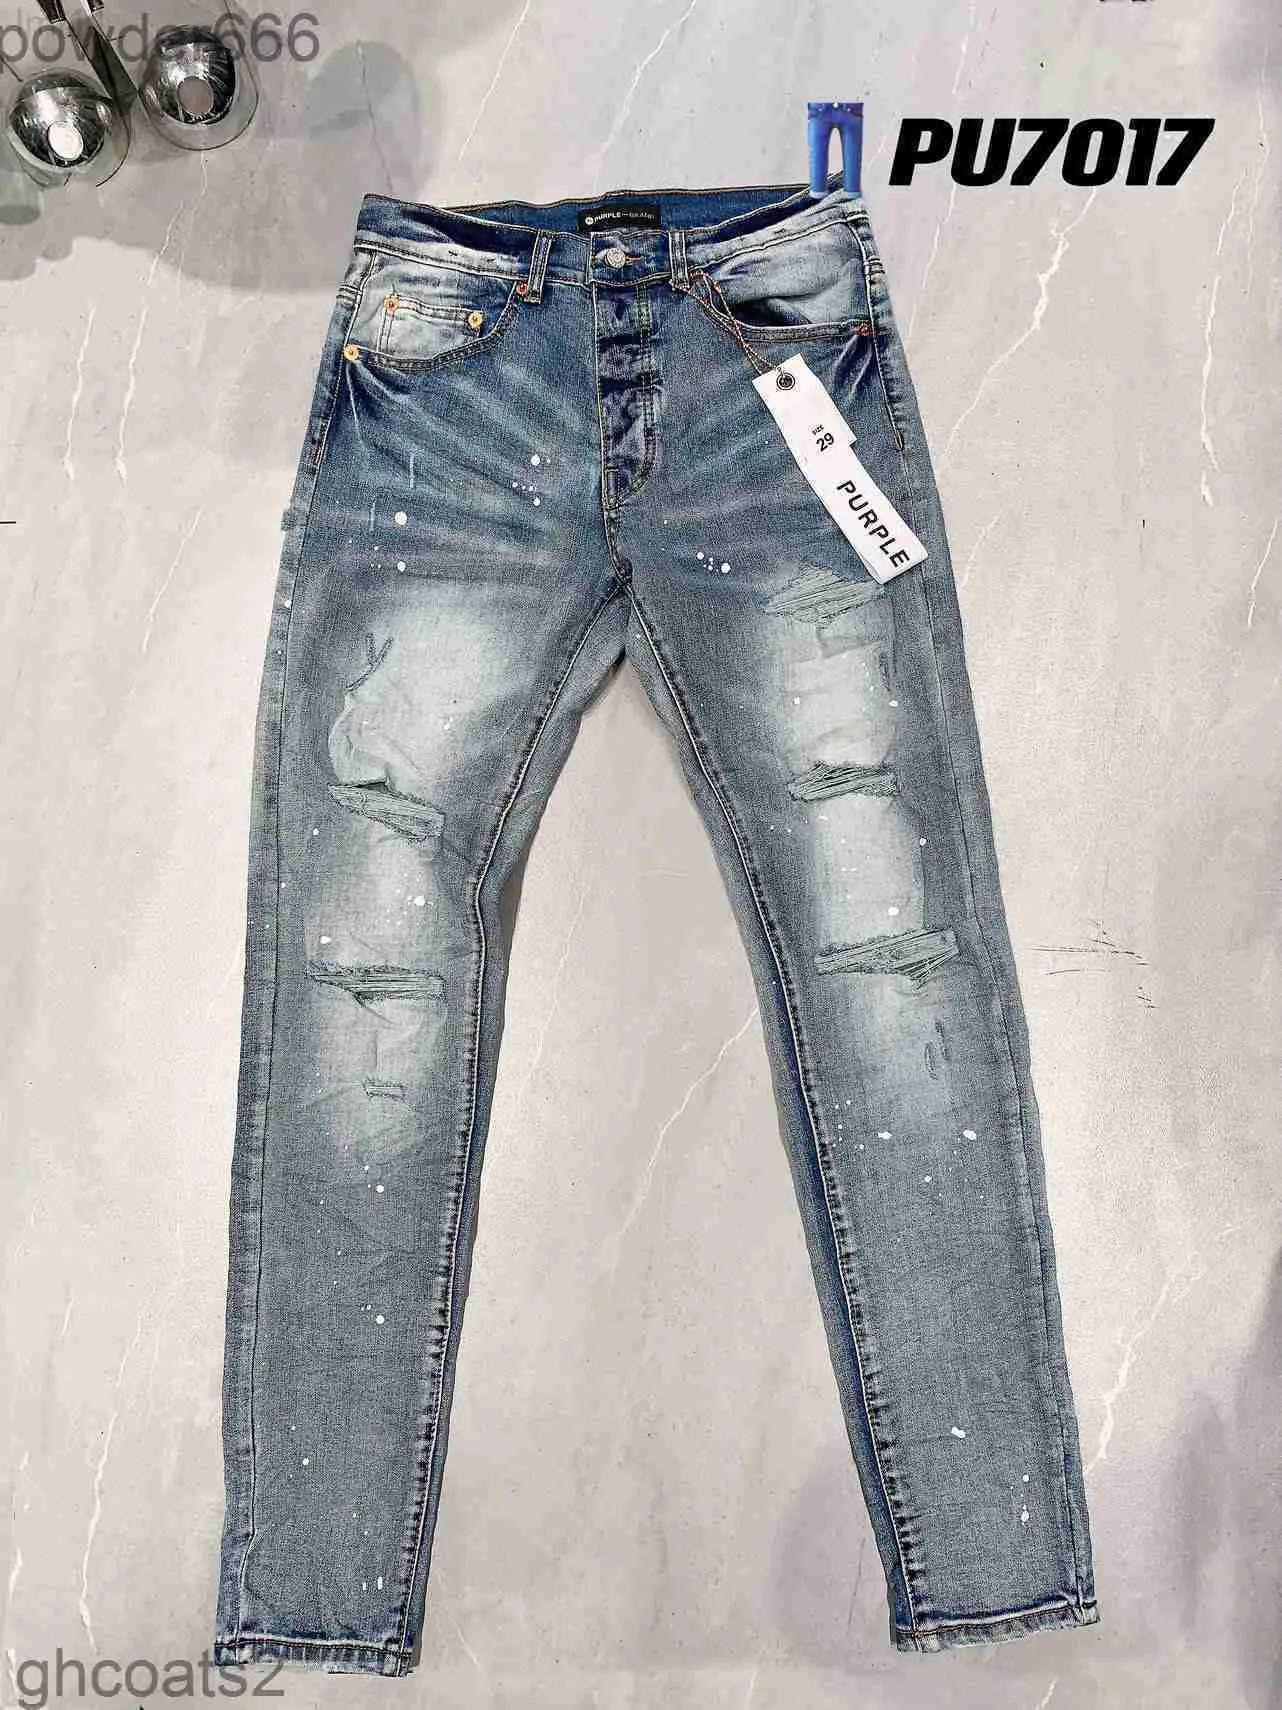 Mäns jeans mager mens jeans designer lila rippade cykel smala raka byxor vik modemens trend varumärke retro hip hop high street 40 xsb4yb85